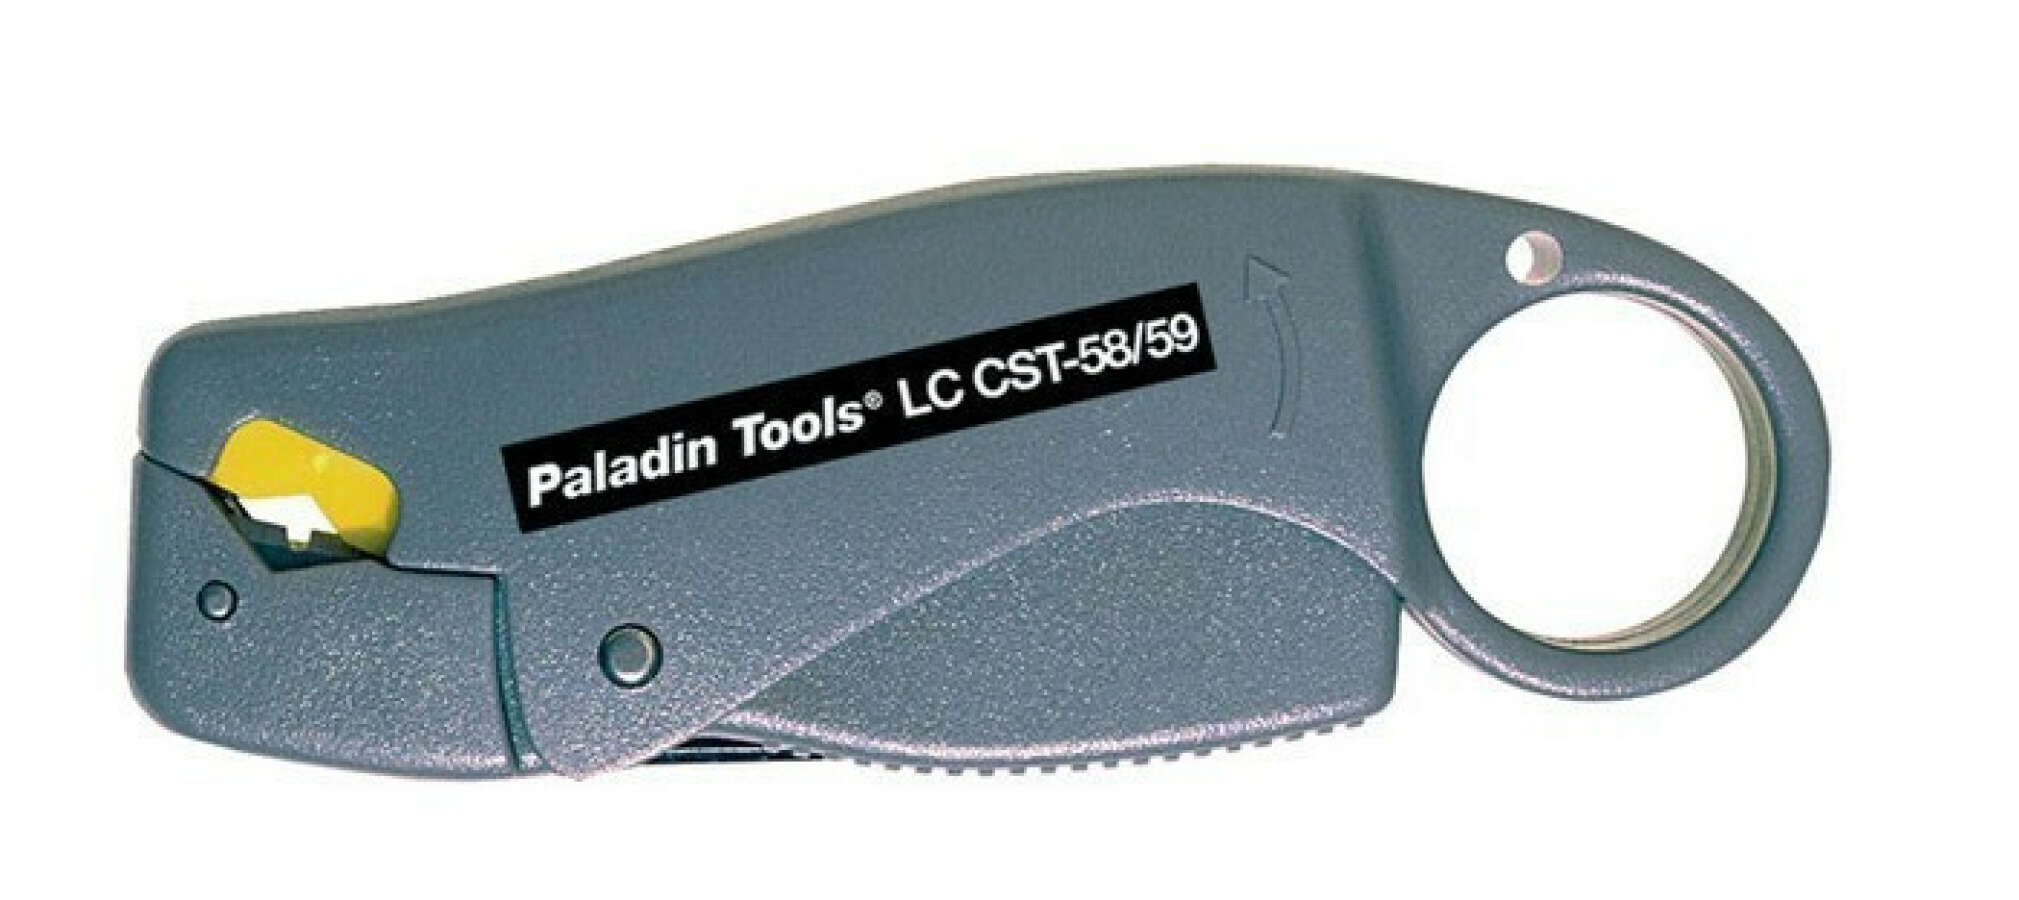 Paladin Tools PA901081 набор инструментов серии CoaxReady для  обслуживания Video,CATV и СКС сетей цена, купить PT-901081 в СвязьКомплект